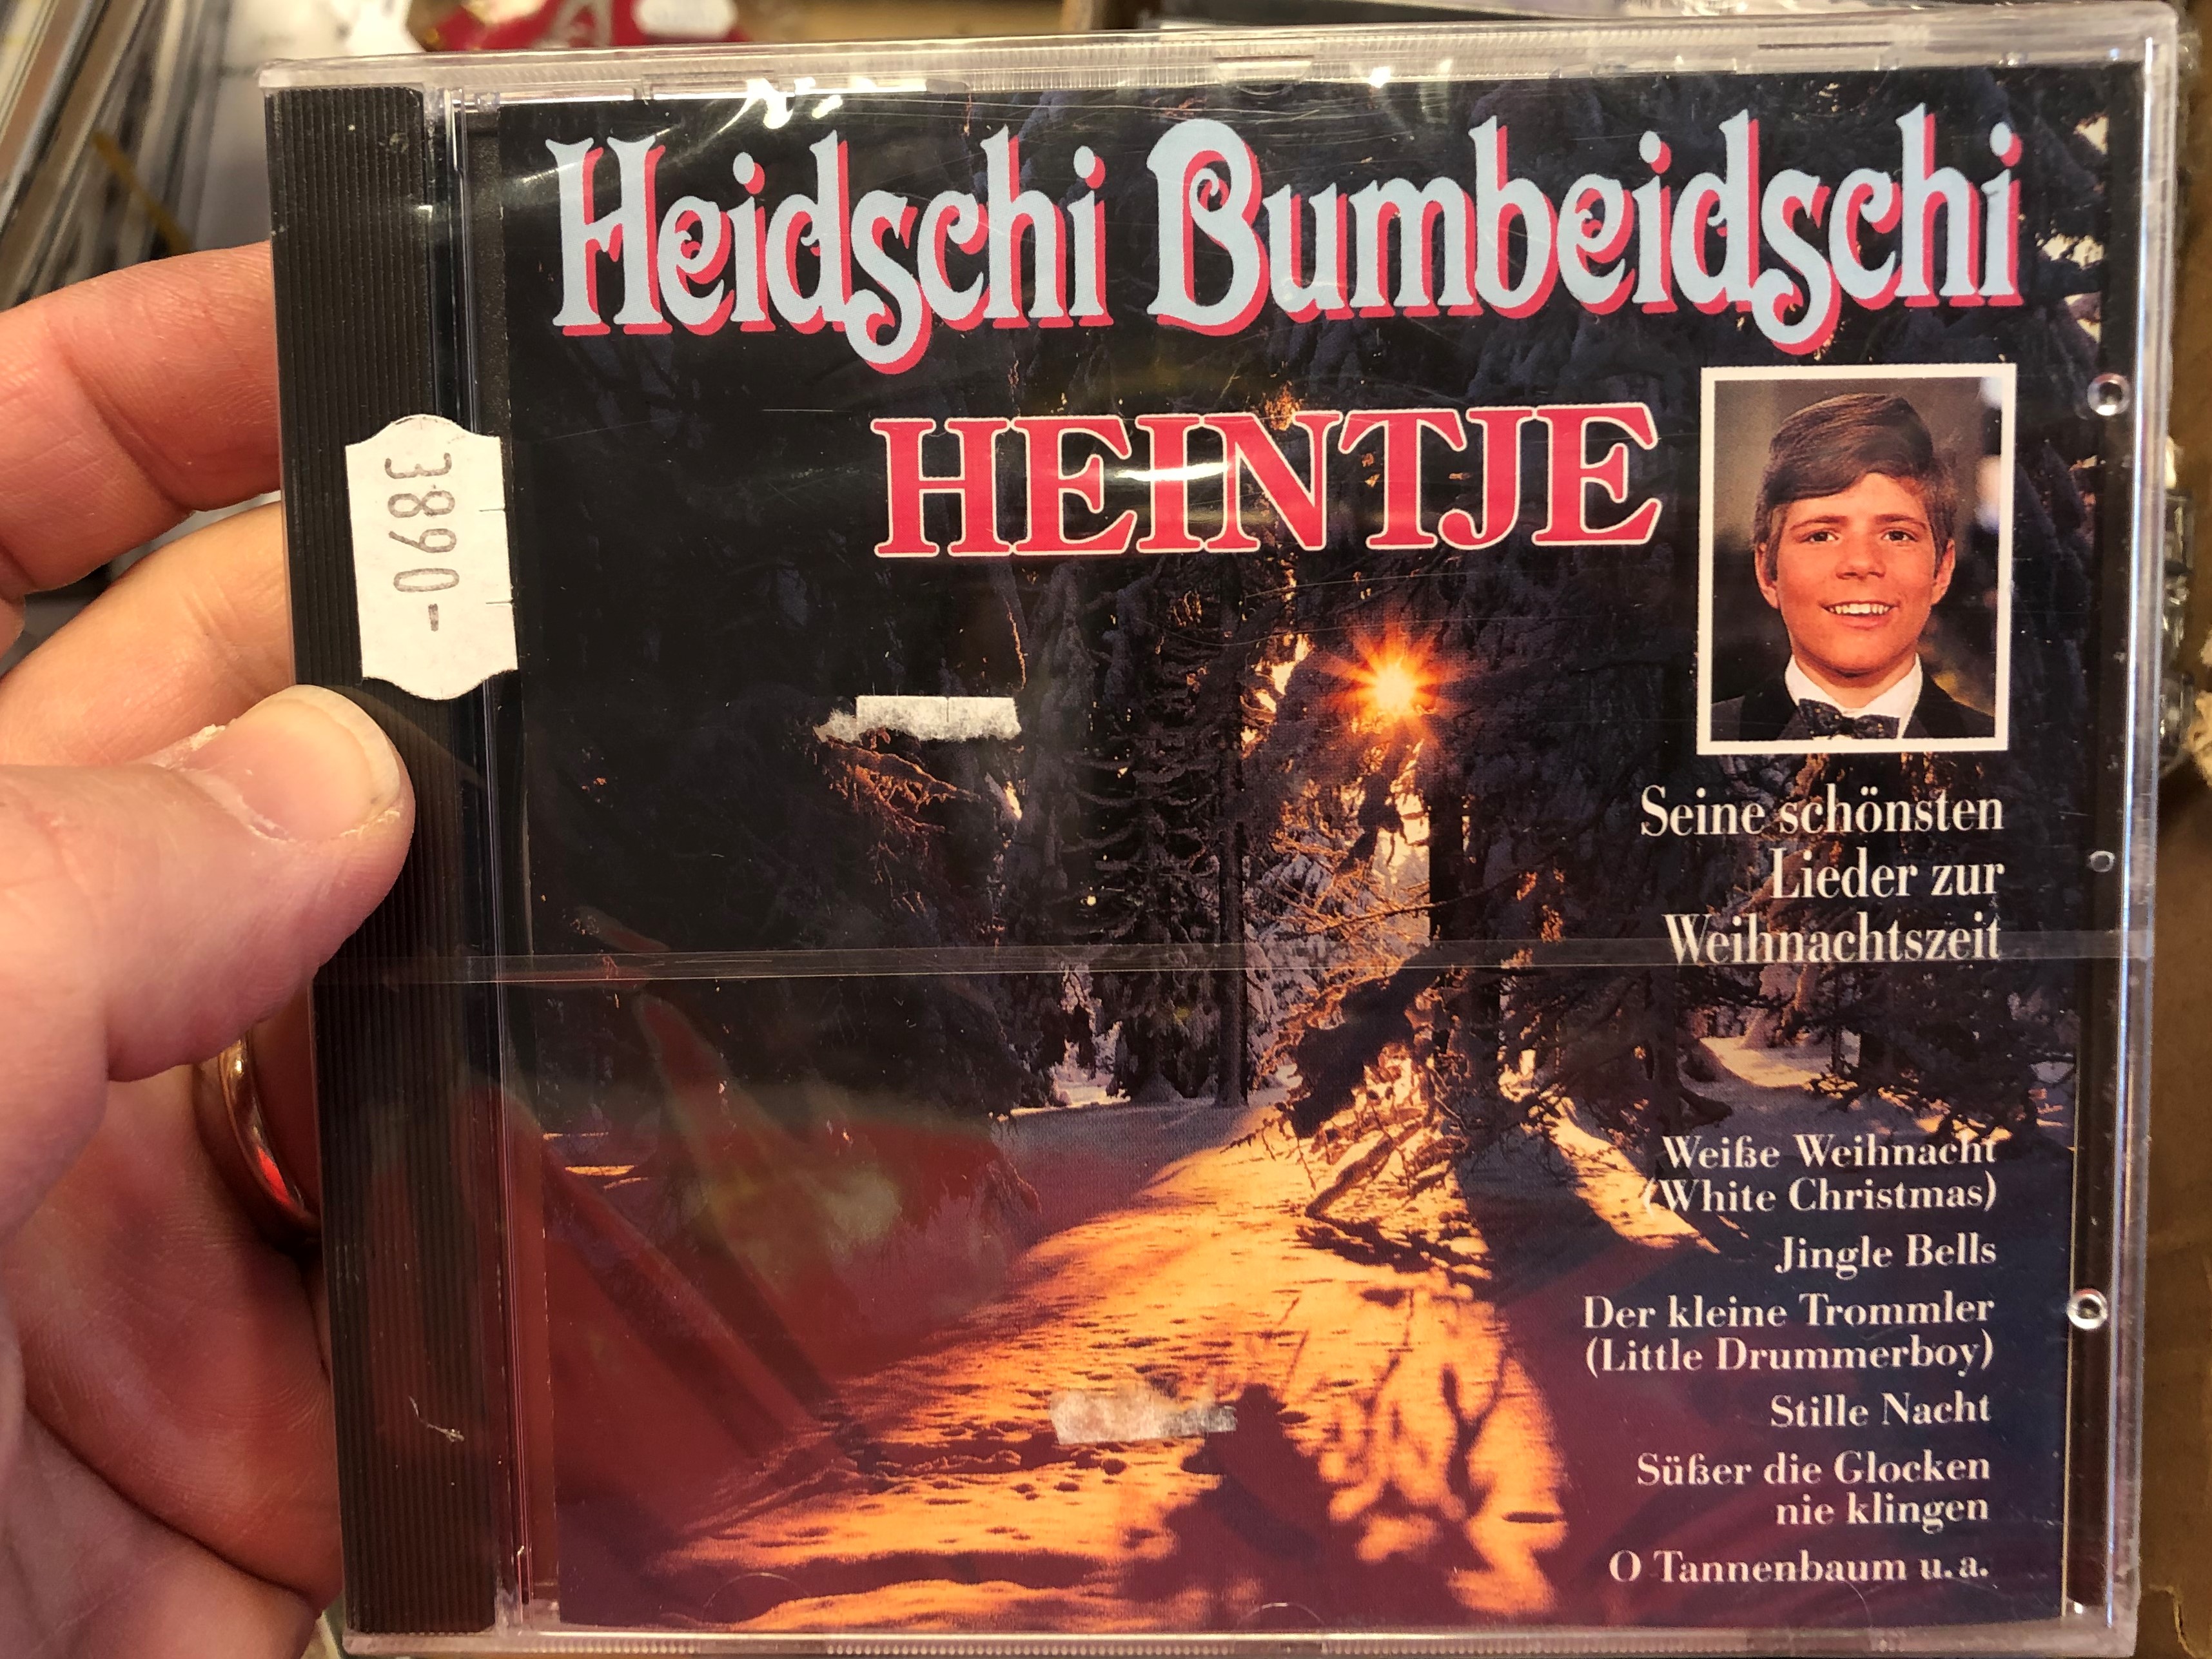 heidschi-bumbeidschi-heintje-seine-schonsten-lidere-zur-weilmachtszeit-weisse-weihnacht-white-christmas-jingle-bells-der-kleine-trommler-little-drummer-boy-stille-nacht-heilige-nac-1-.jpg